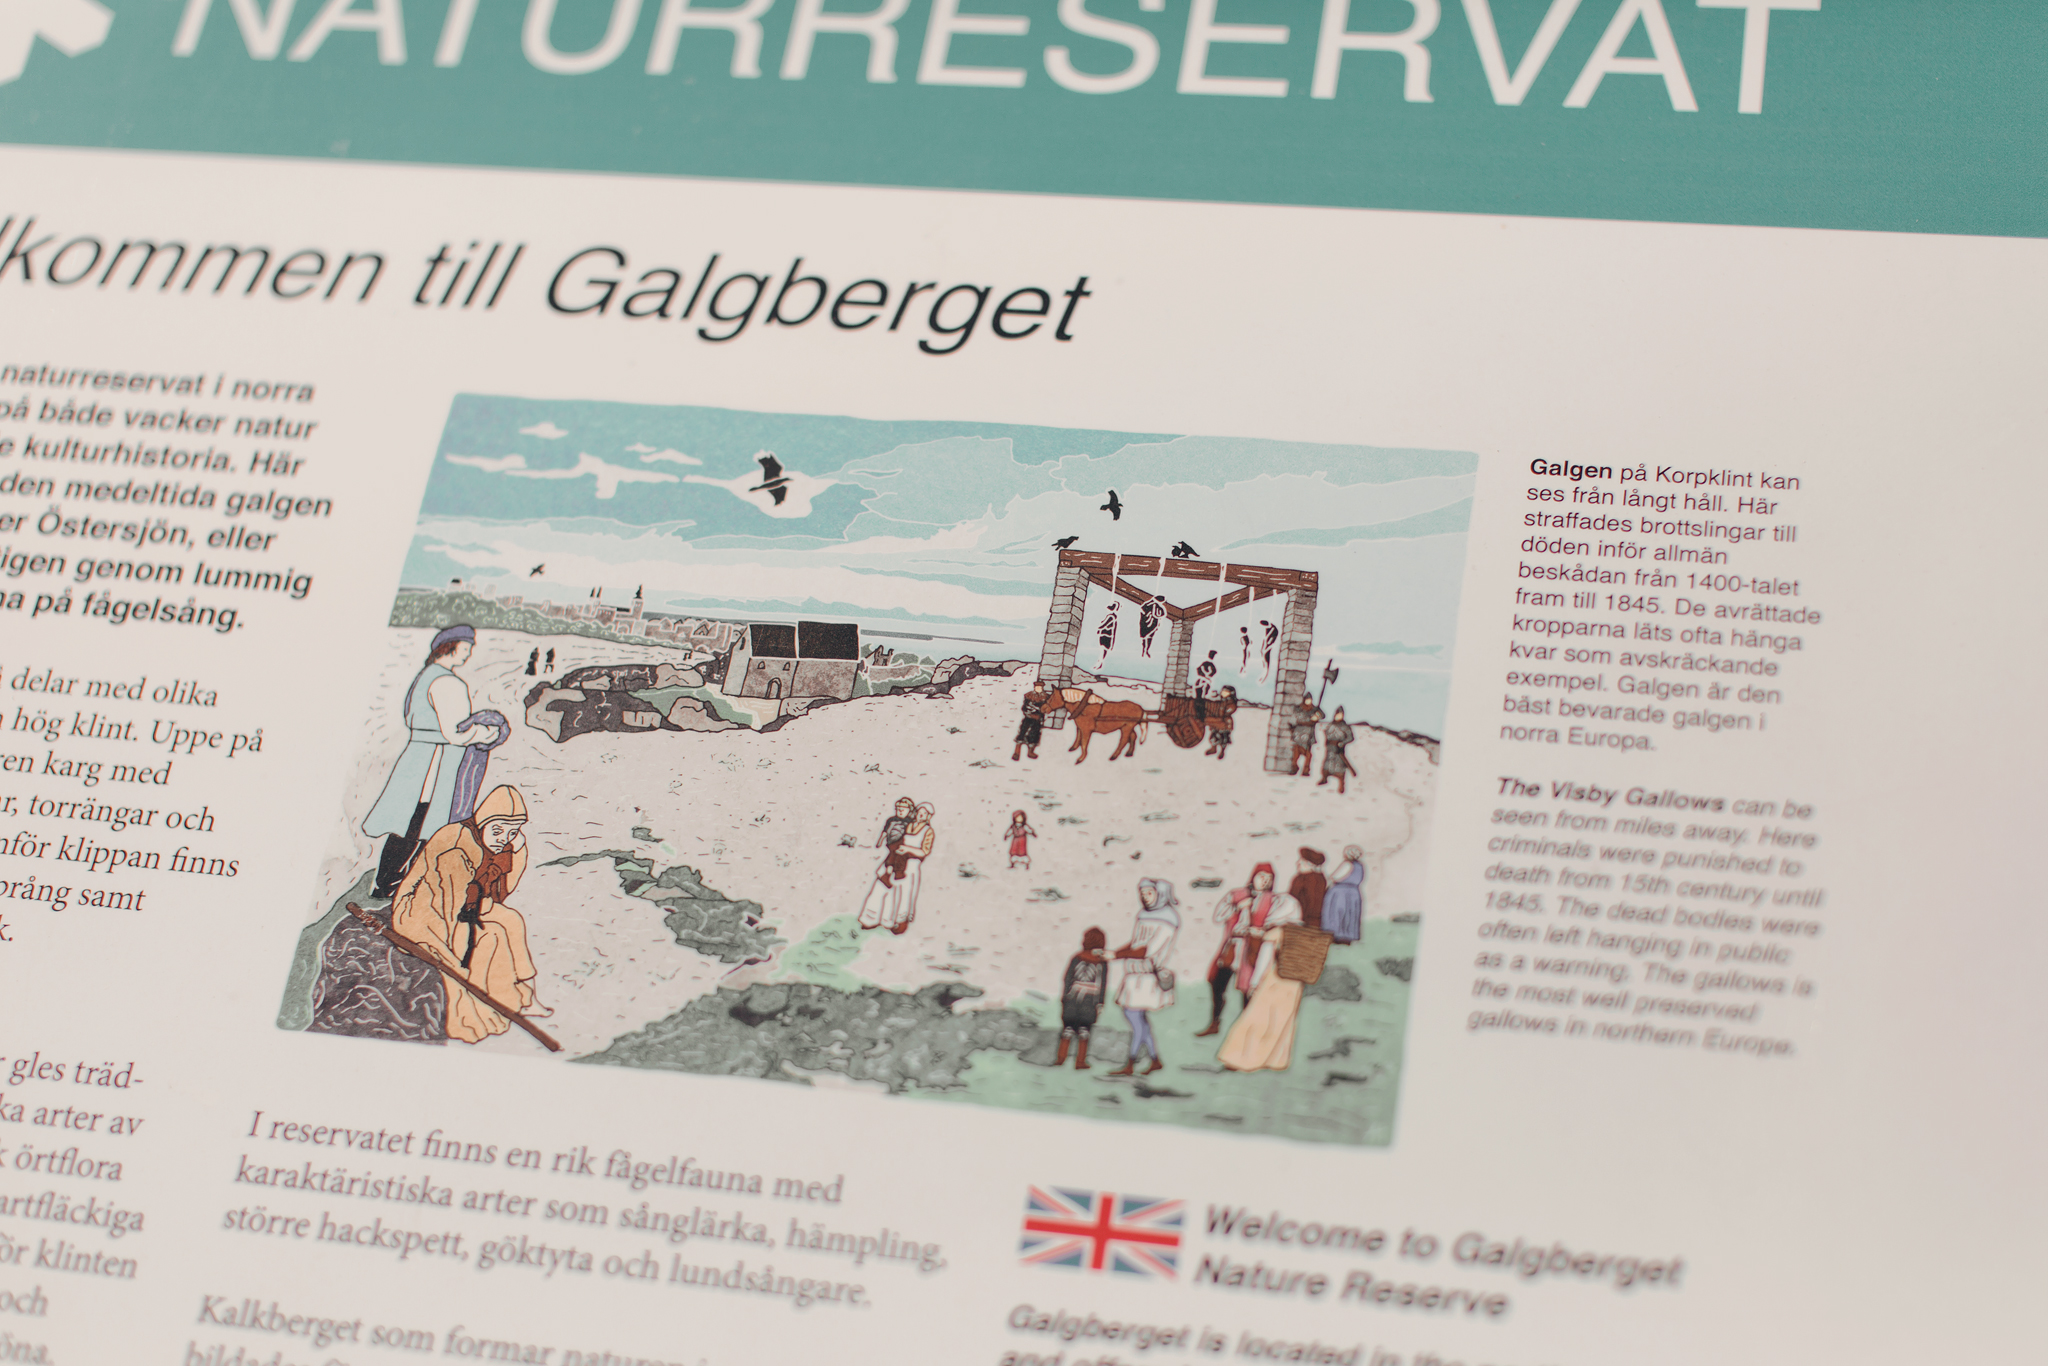 Galgberget på Gotland